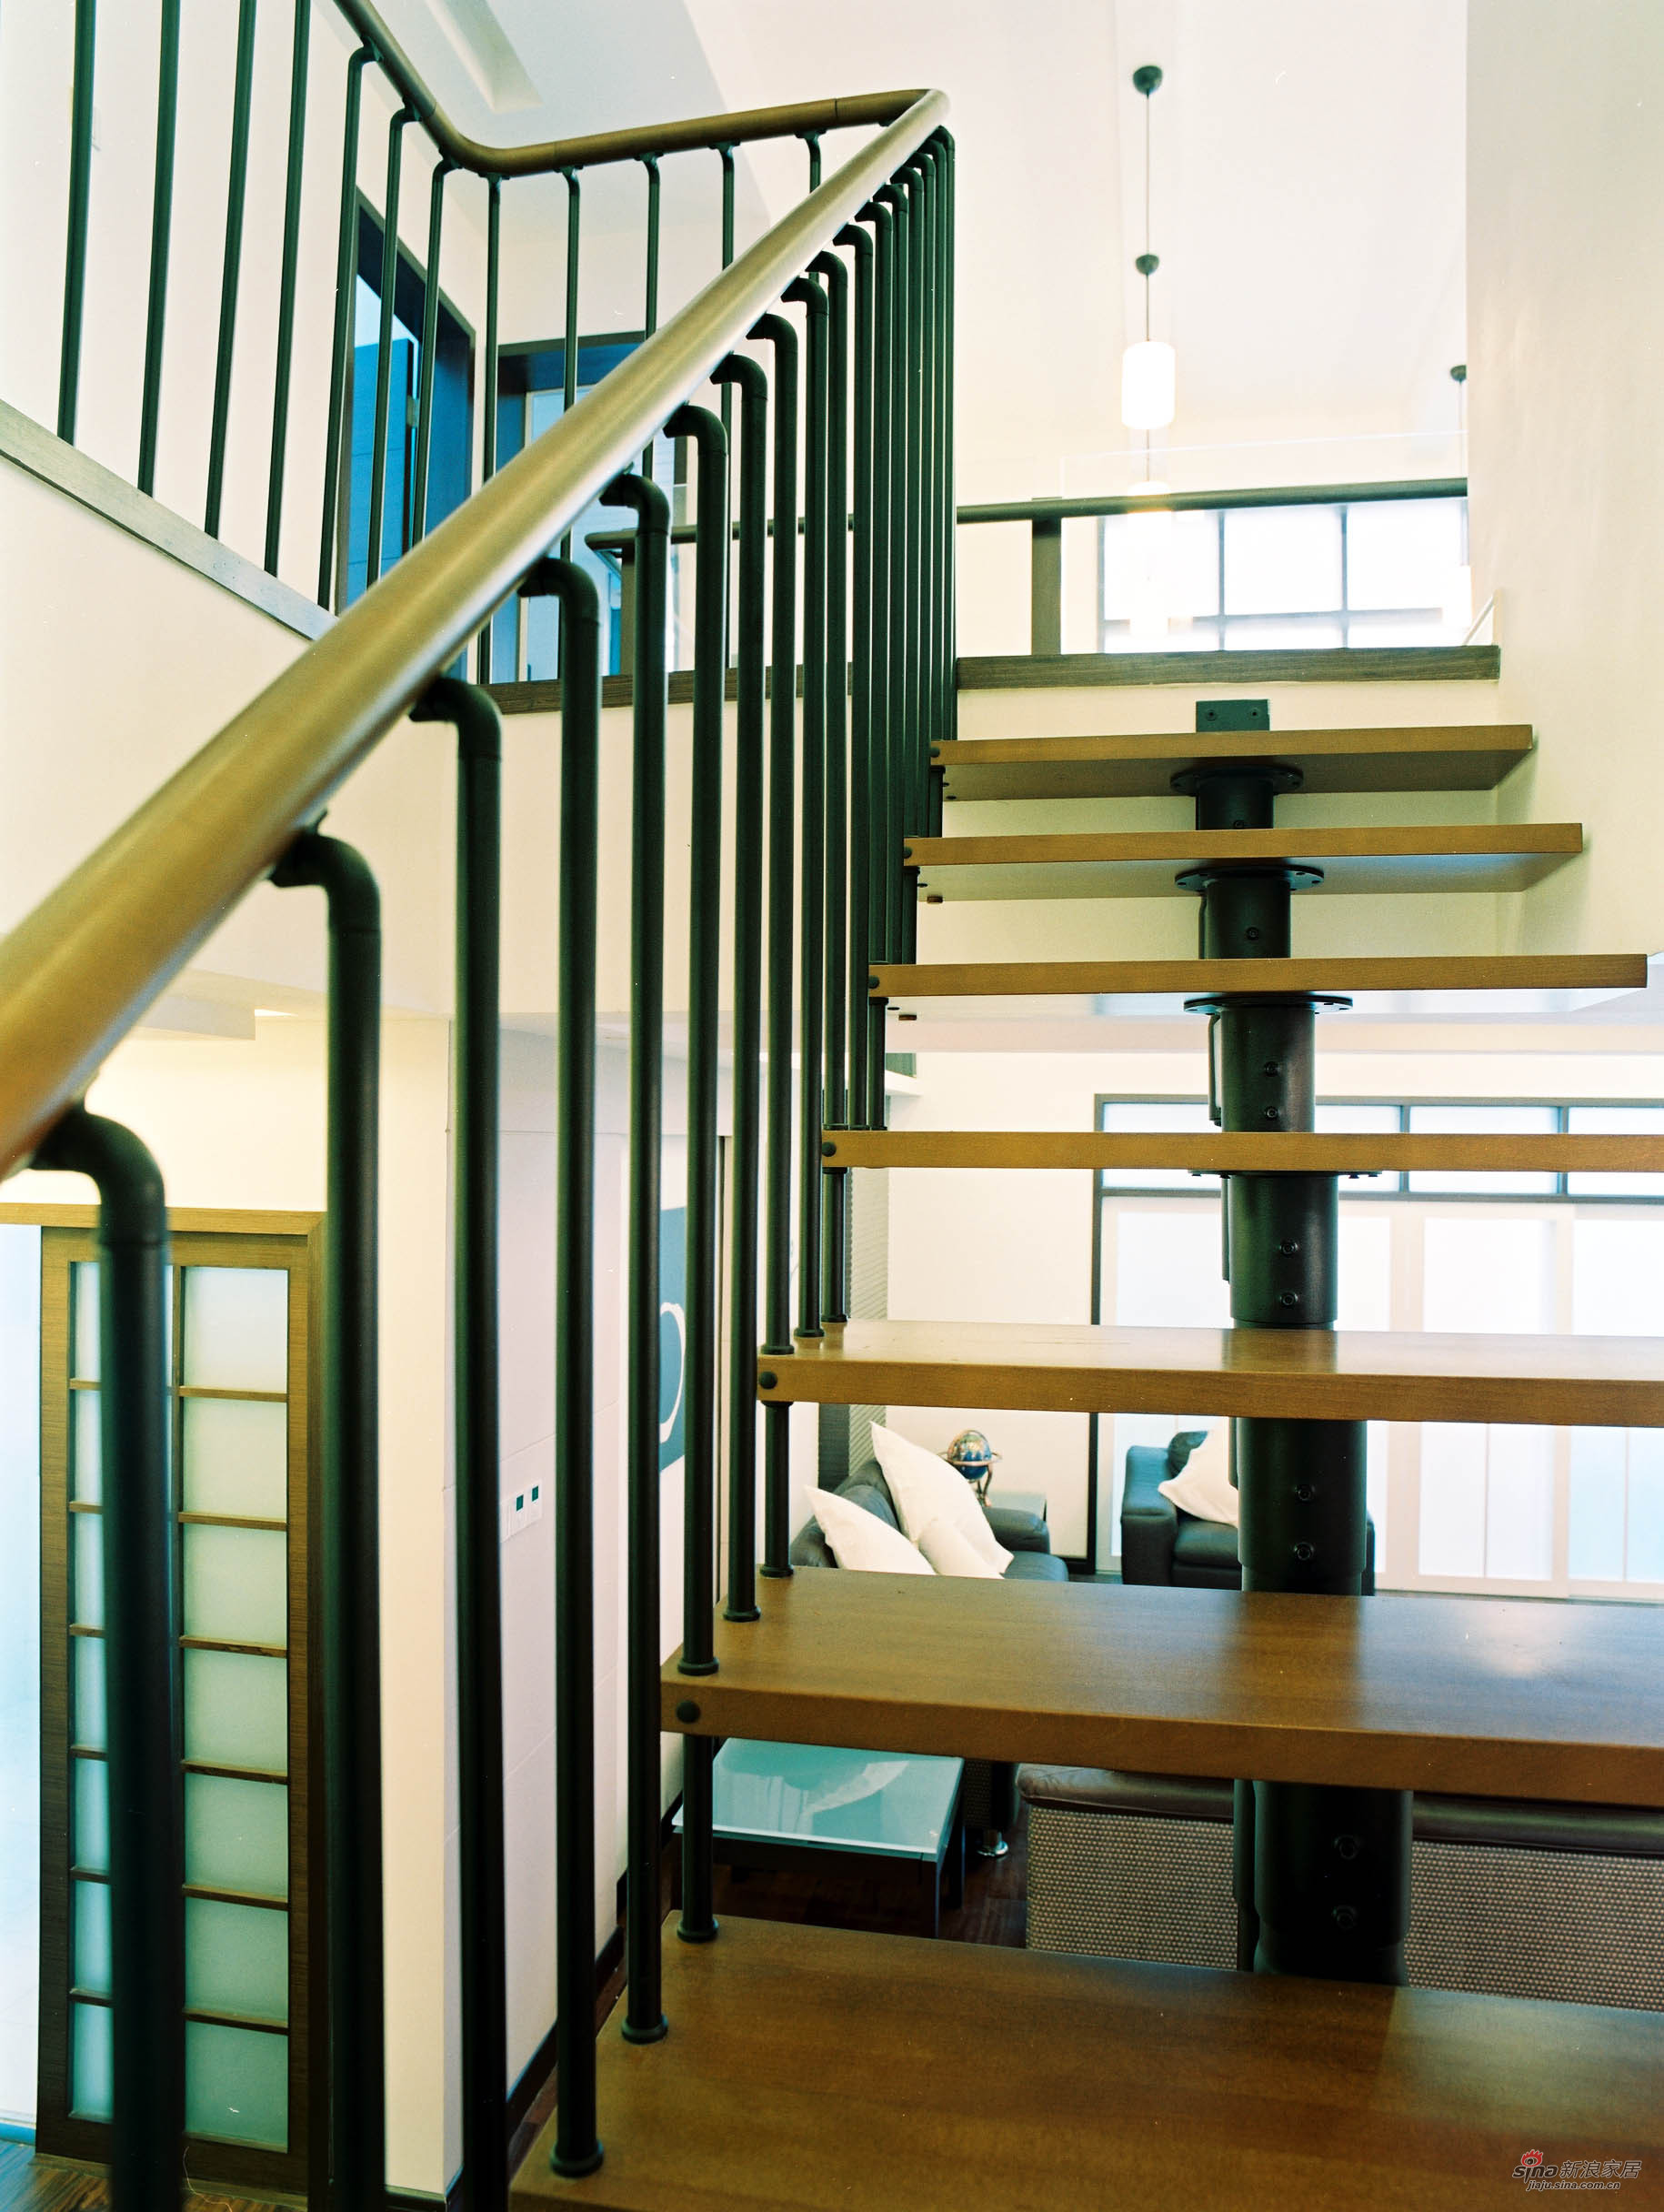 loft风格楼梯装修效果图 – 设计本装修效果图